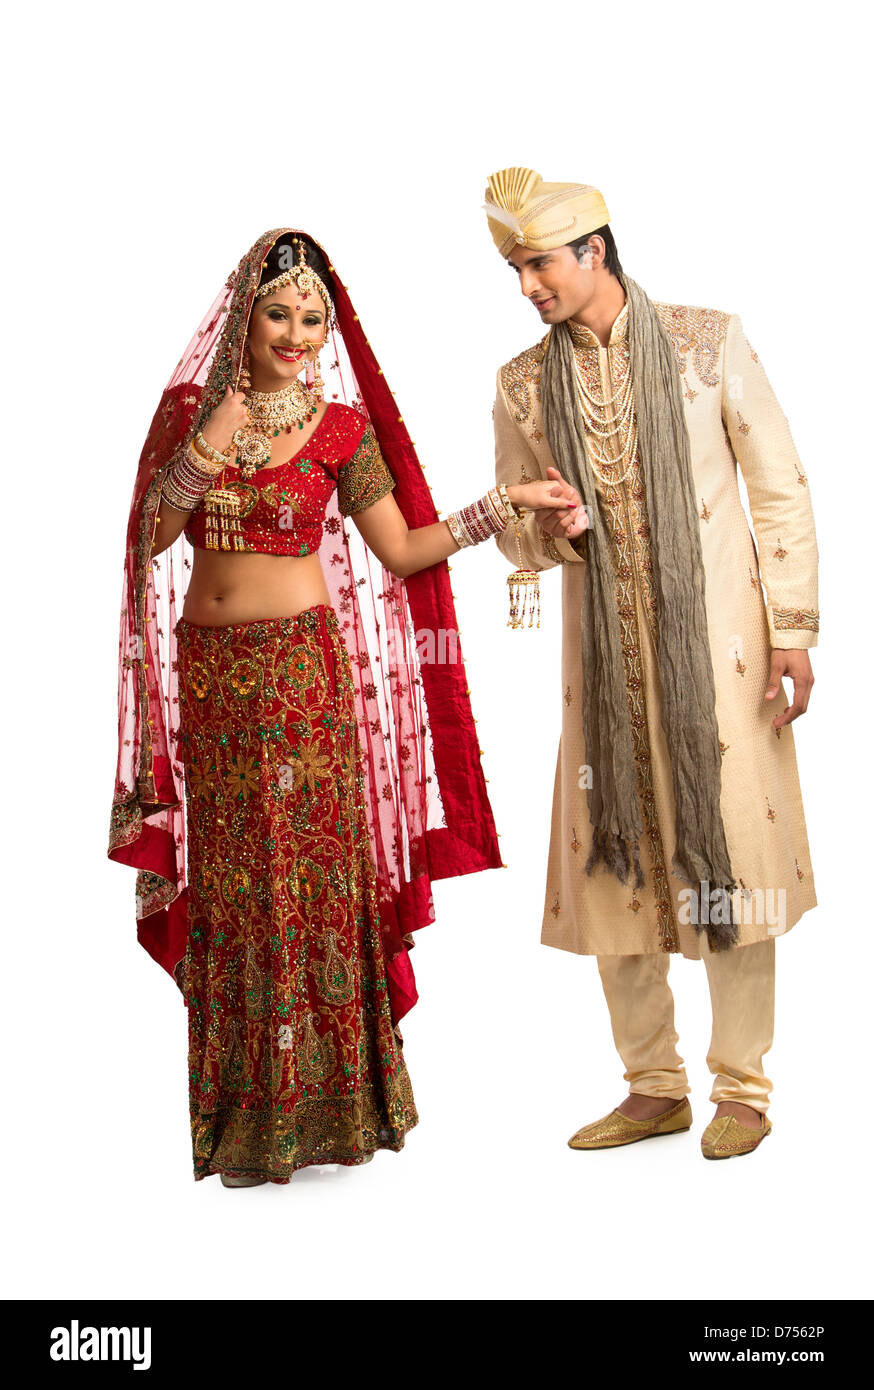 Umairish studio photography | Indian wedding poses, Wedding couple poses, Wedding  couple poses photography